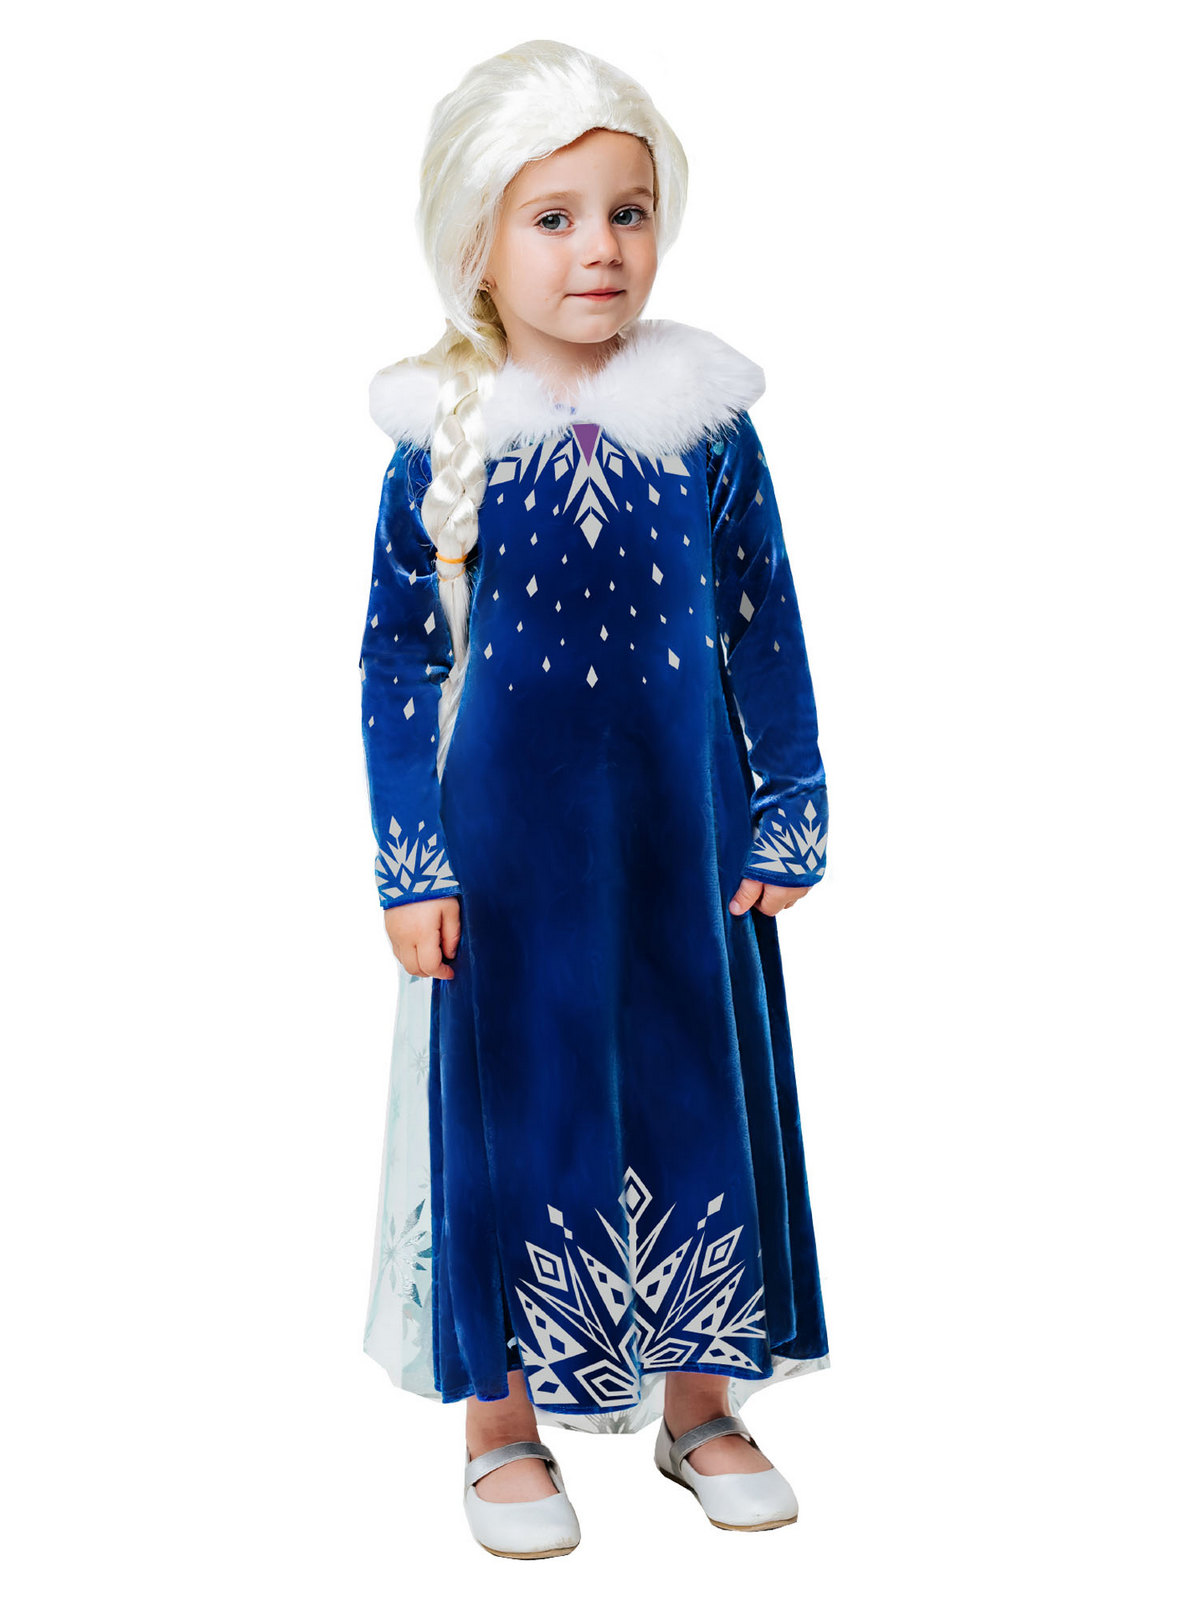 Карнавальный костюм Batik 9004 к-21 Эльза зимнее платье, синий, 104 карнавальный костюм batik 9004 к 21 эльза зимнее платье синий 104